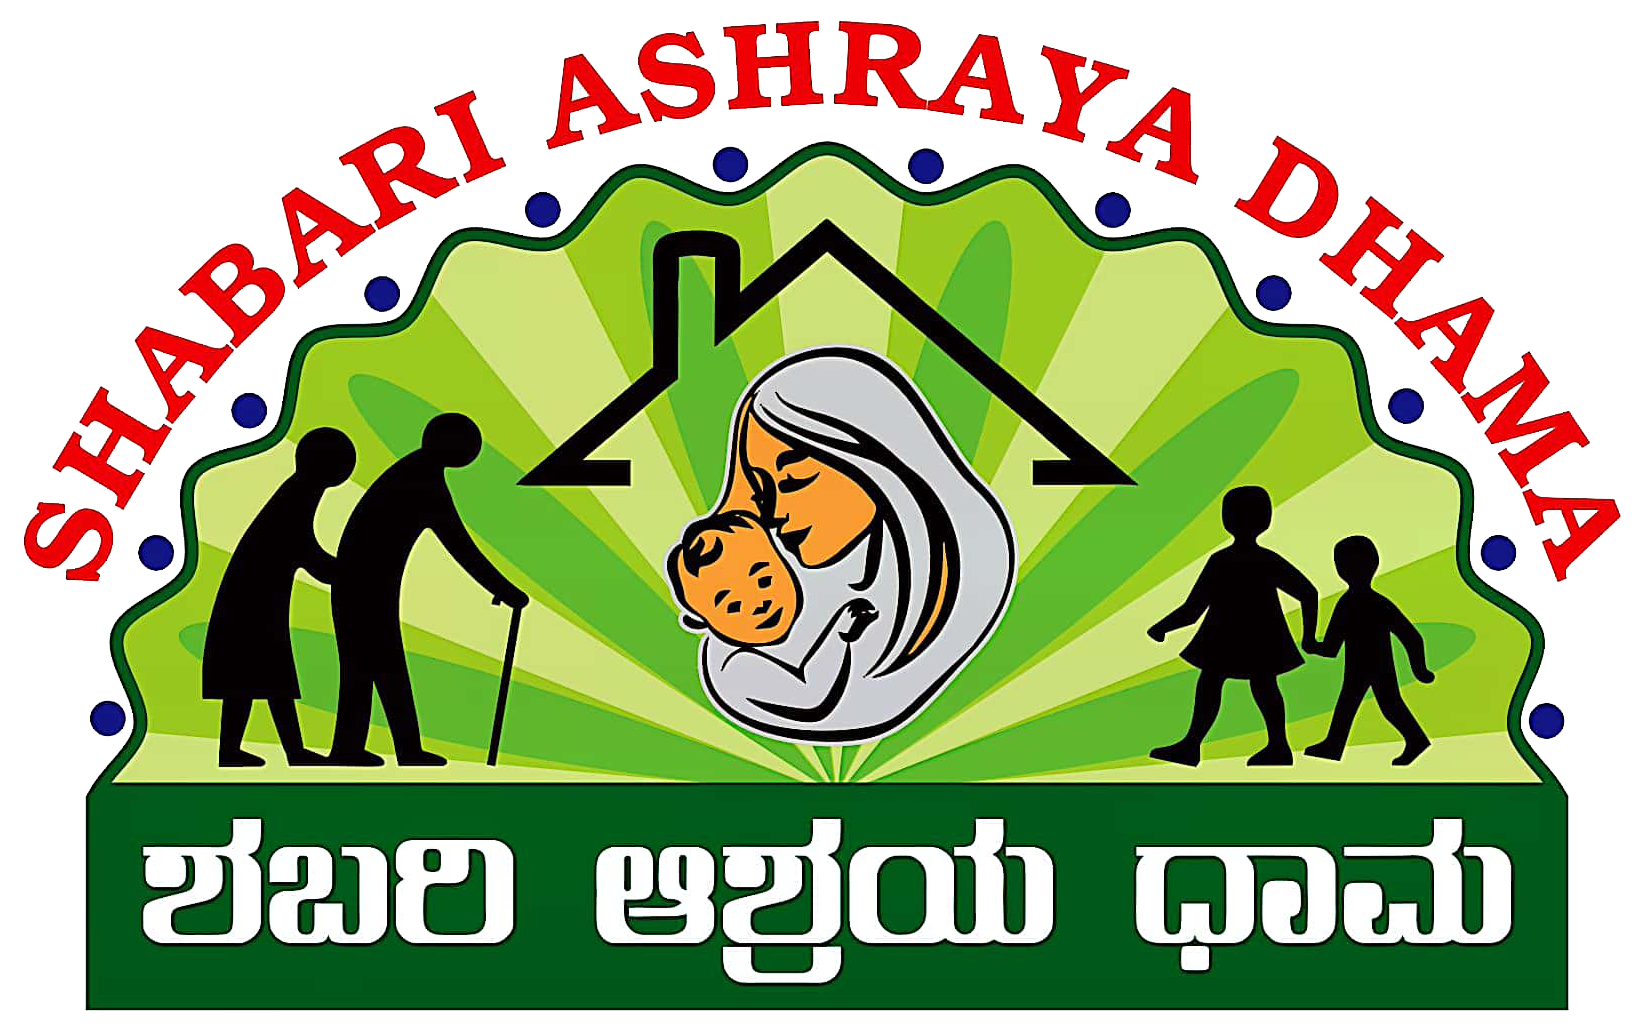 ShabariAshrayaDhama